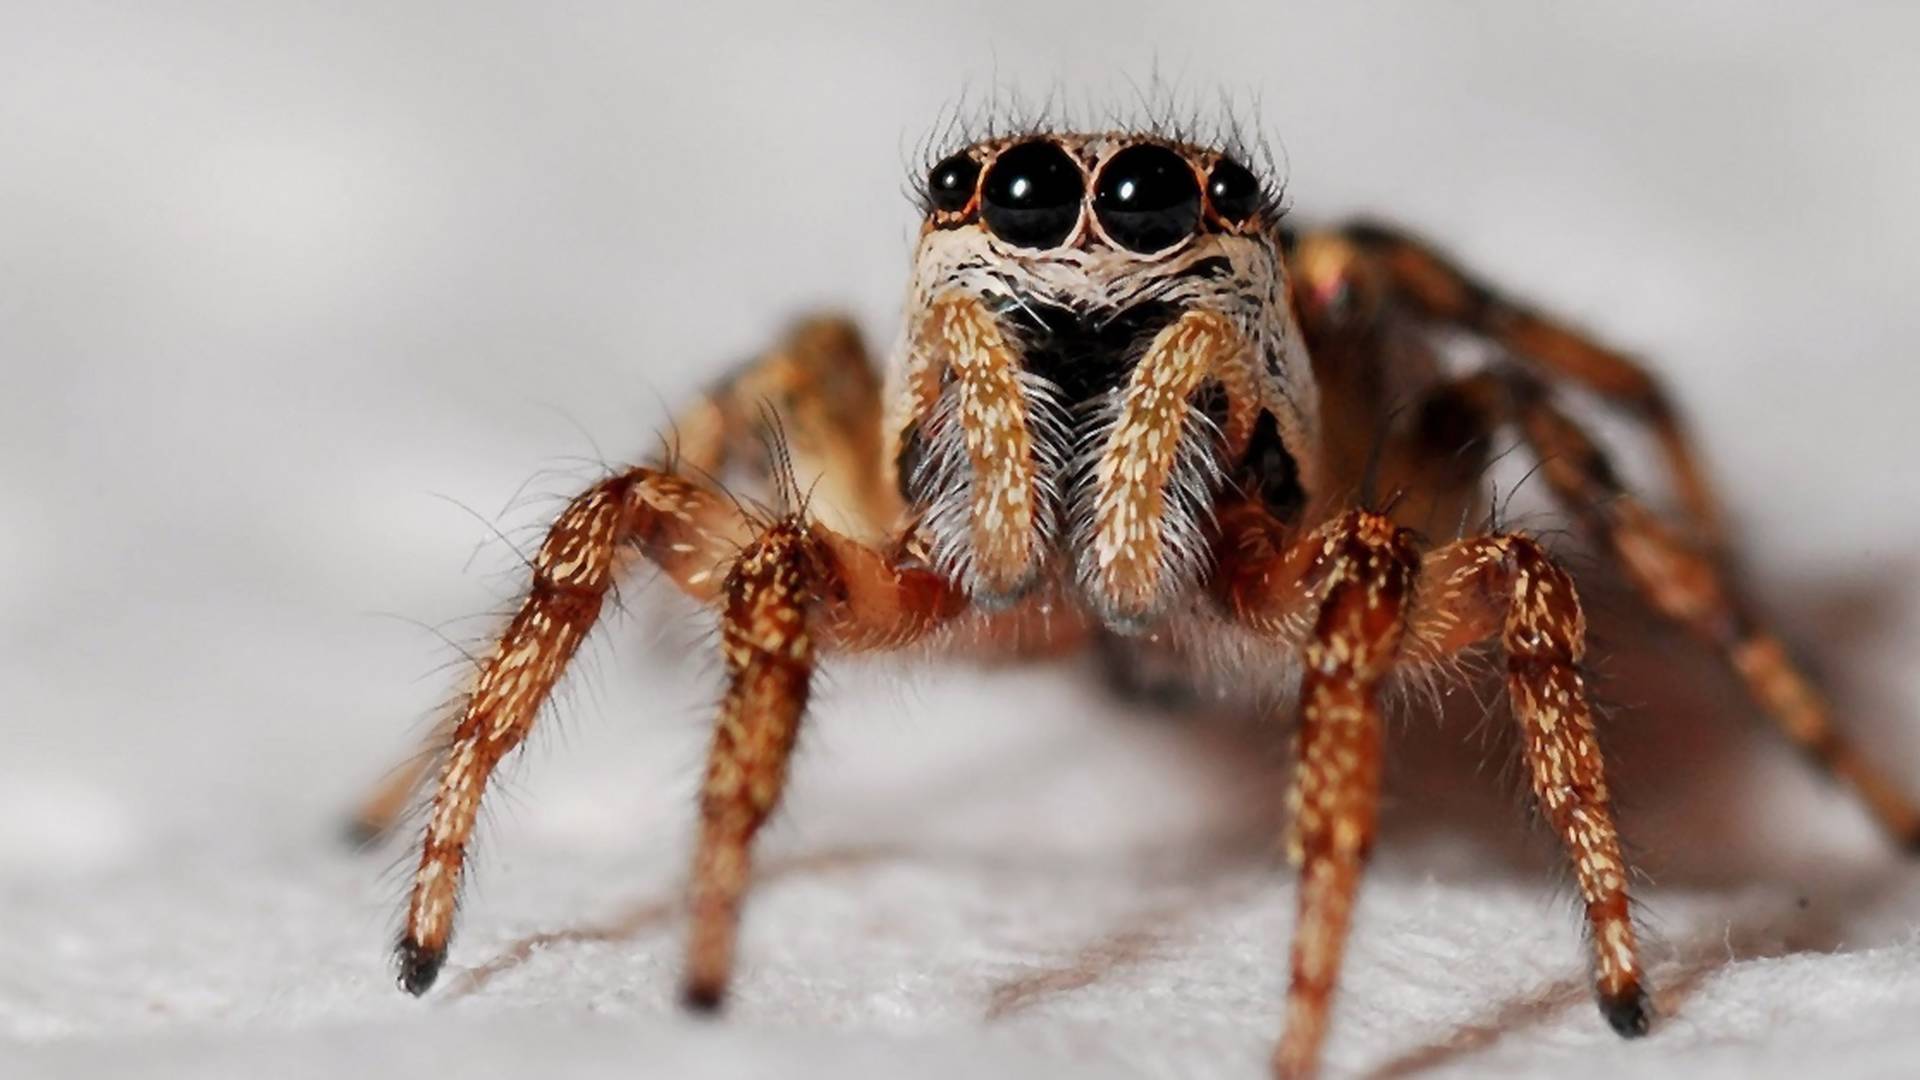 Ak sa bojíš pavúkov, máme zlú správu. Vedci ich naučili skákať